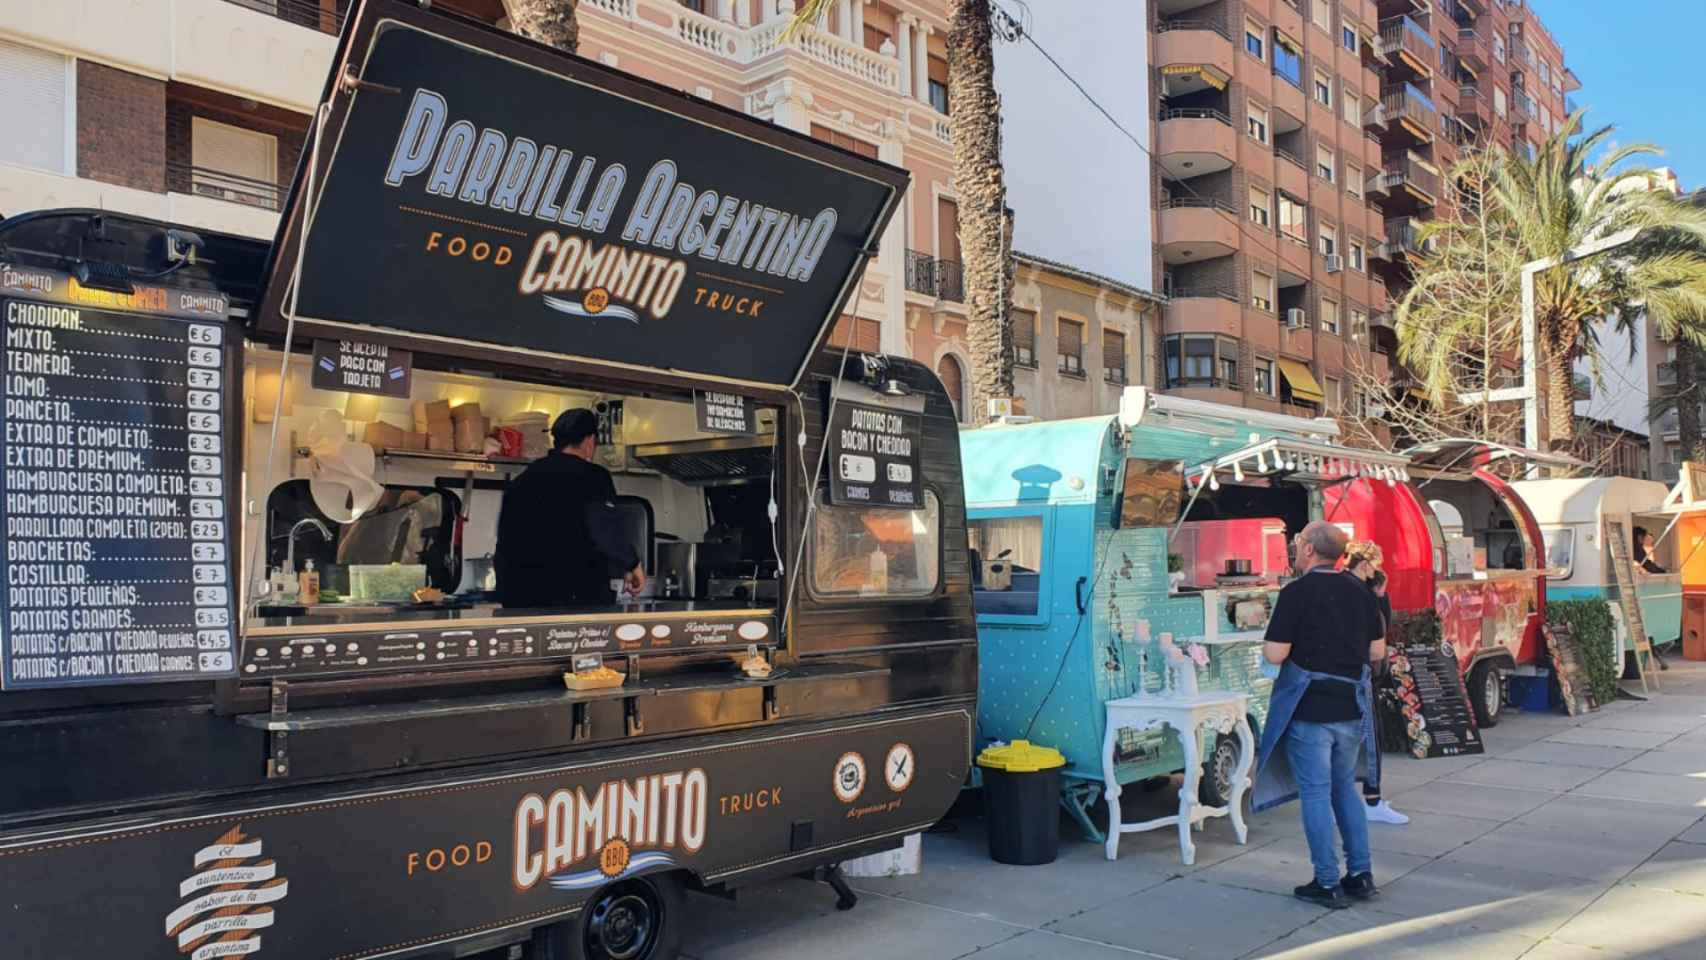 Hasta 14 foodtrucks vintage visitarán la plaza Séneca del 3 al 5 de junio.